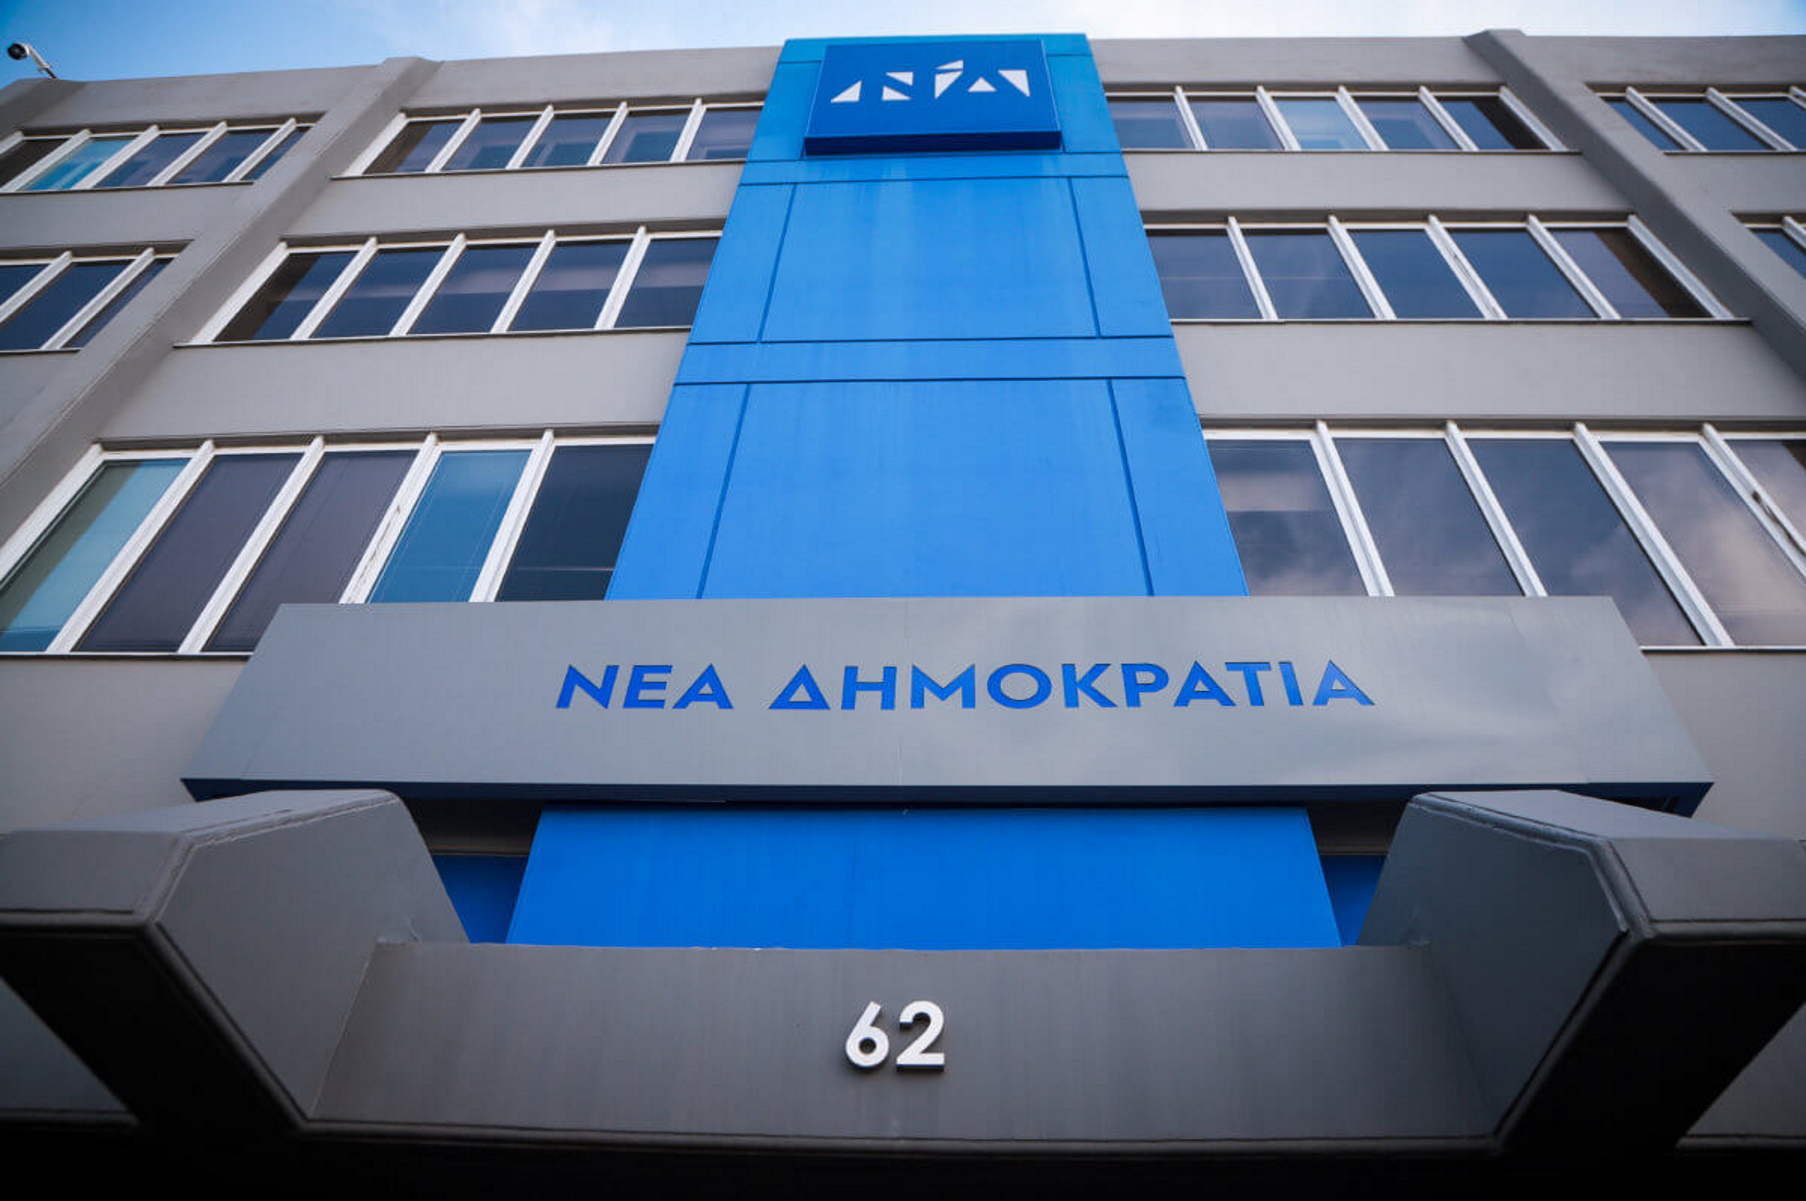 ΝΔ: Aποδείχθηκε ότι ο «πολακισμός» είναι ταυτισμένος με τον ΣΥΡΙΖΑ και τον Αλέξη Τσίπρα